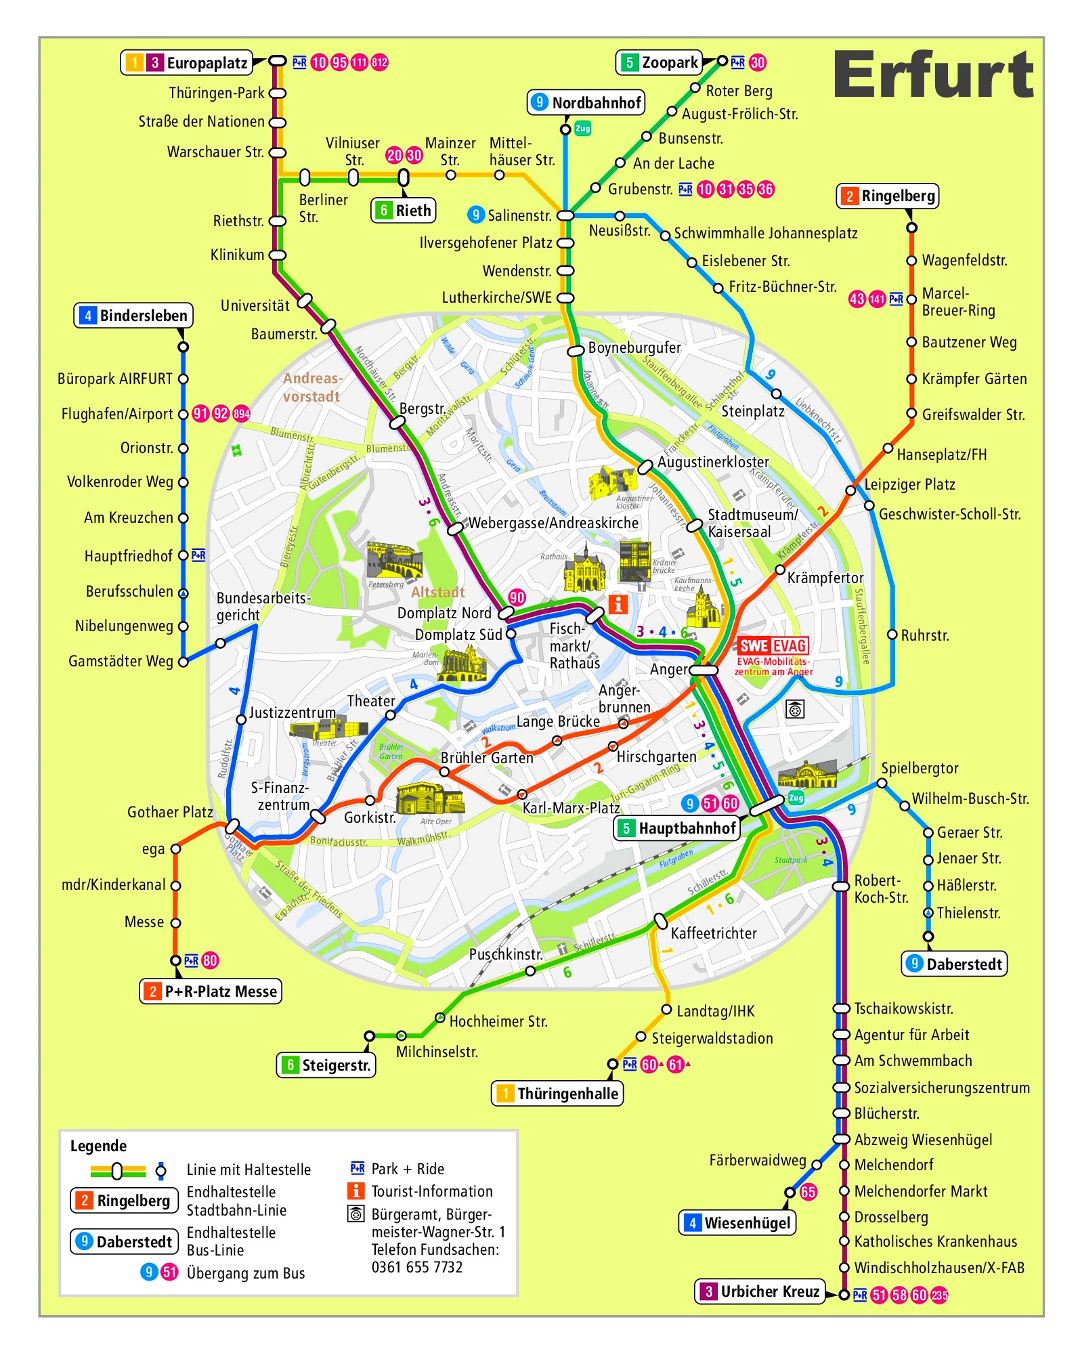 Большая детальная карта сети общественного транспорта города Эрфурт